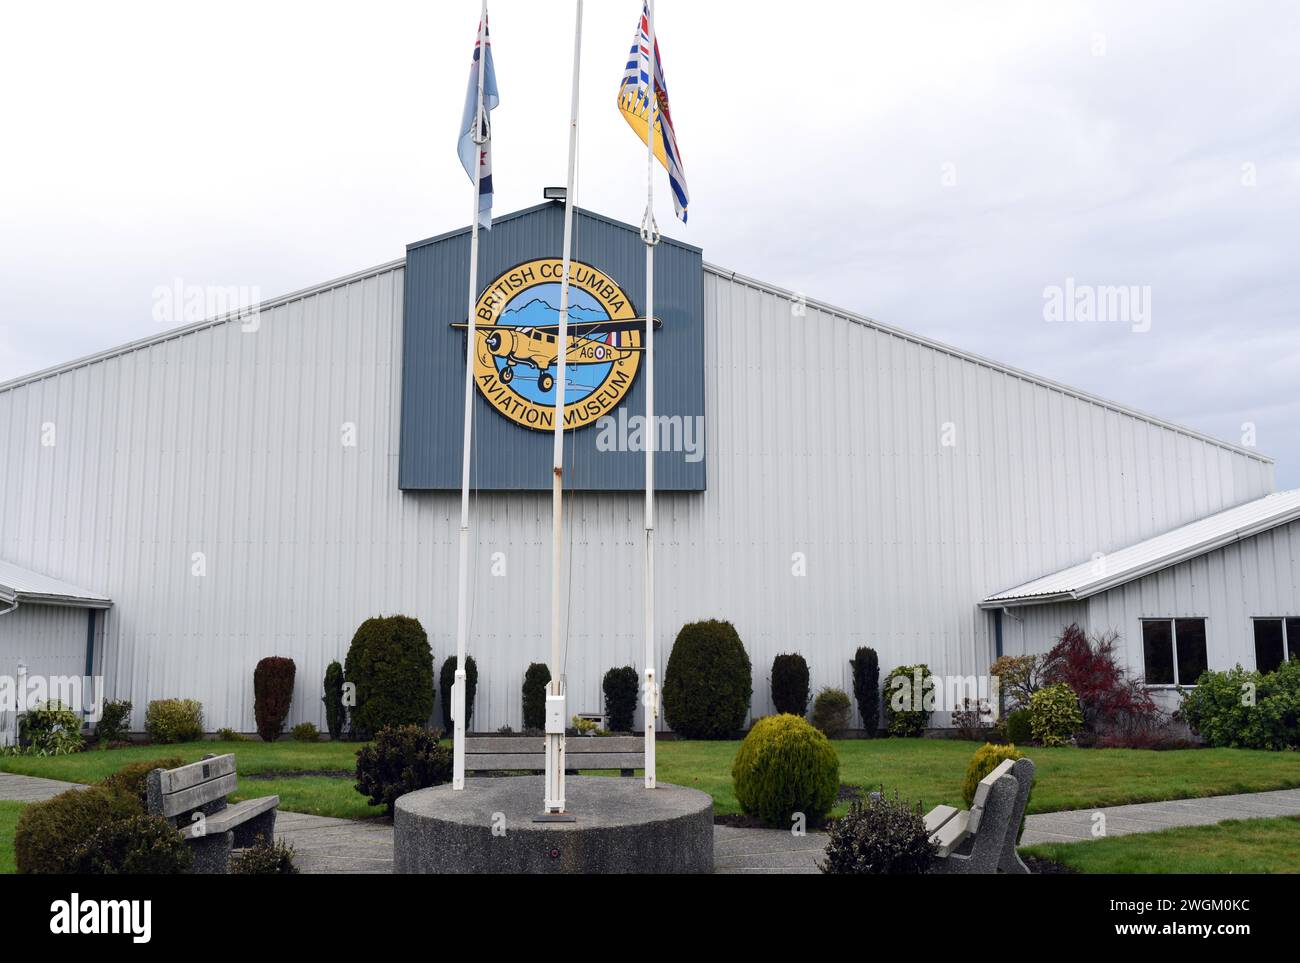 The British Columbia Aviation Museum in Sidney, British Columbia Stock Photo